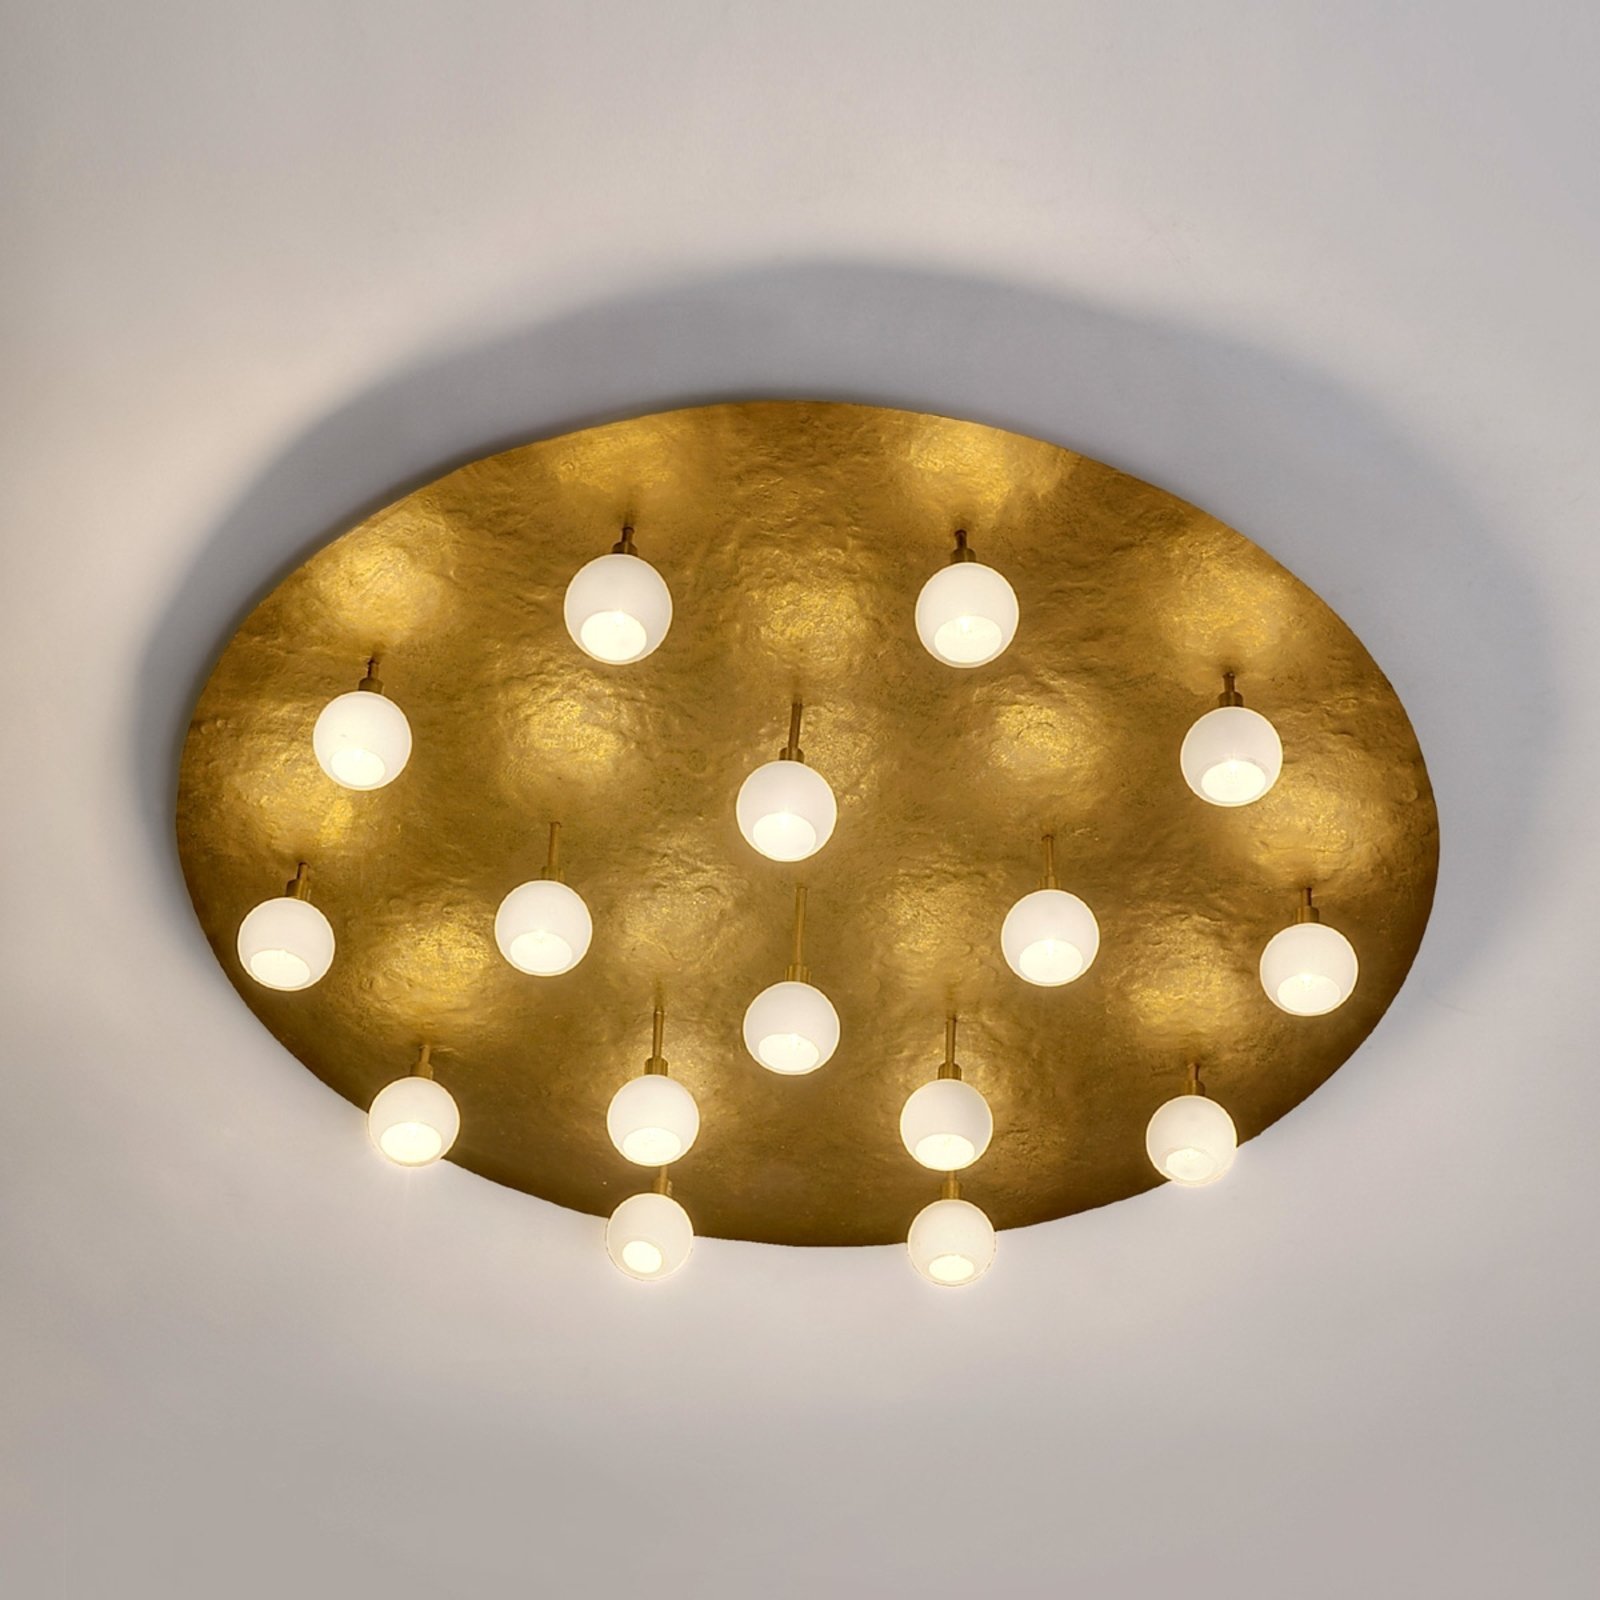 Round LED designer ceiling light Lucente 16-bulb